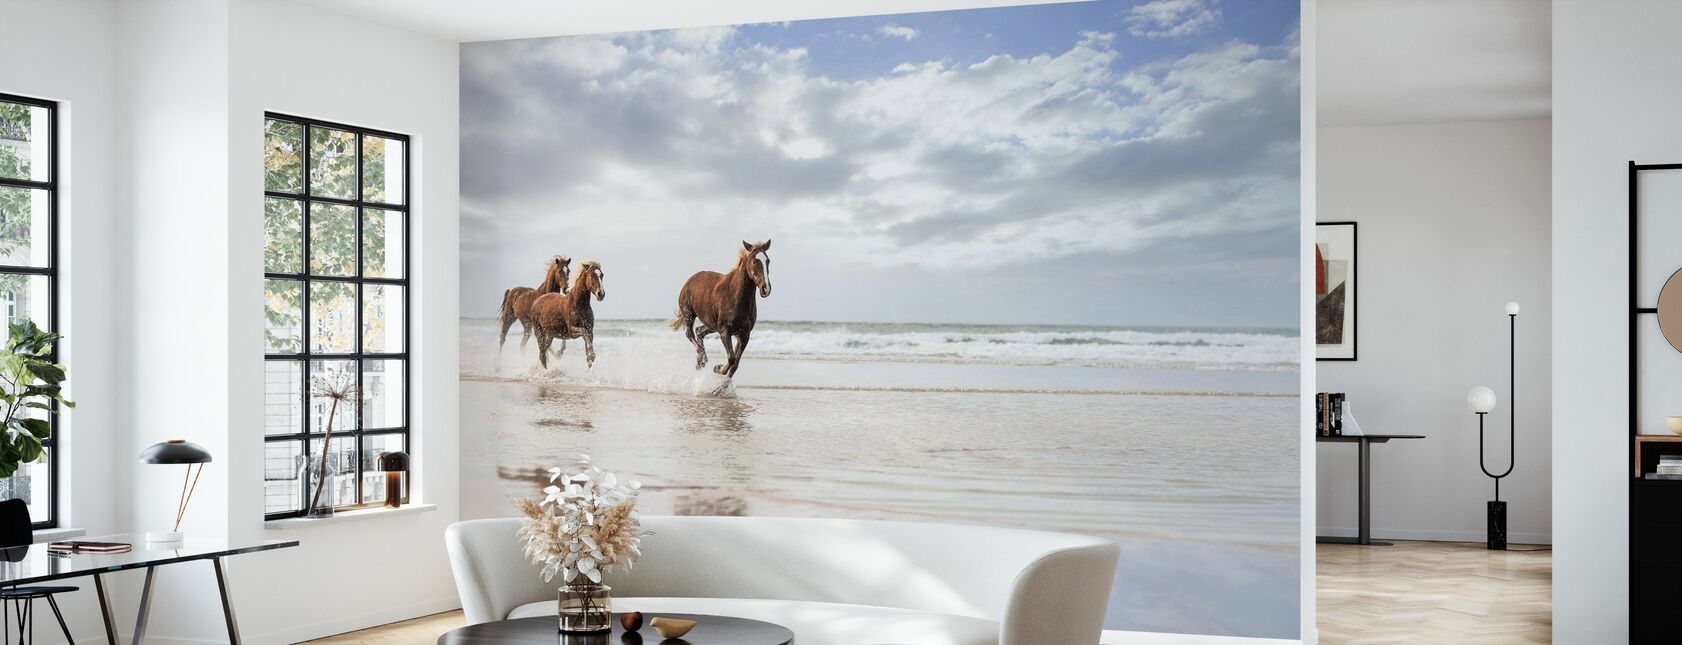 Cavalli sulla spiaggia sudafricana - Carta da parati - Salotto